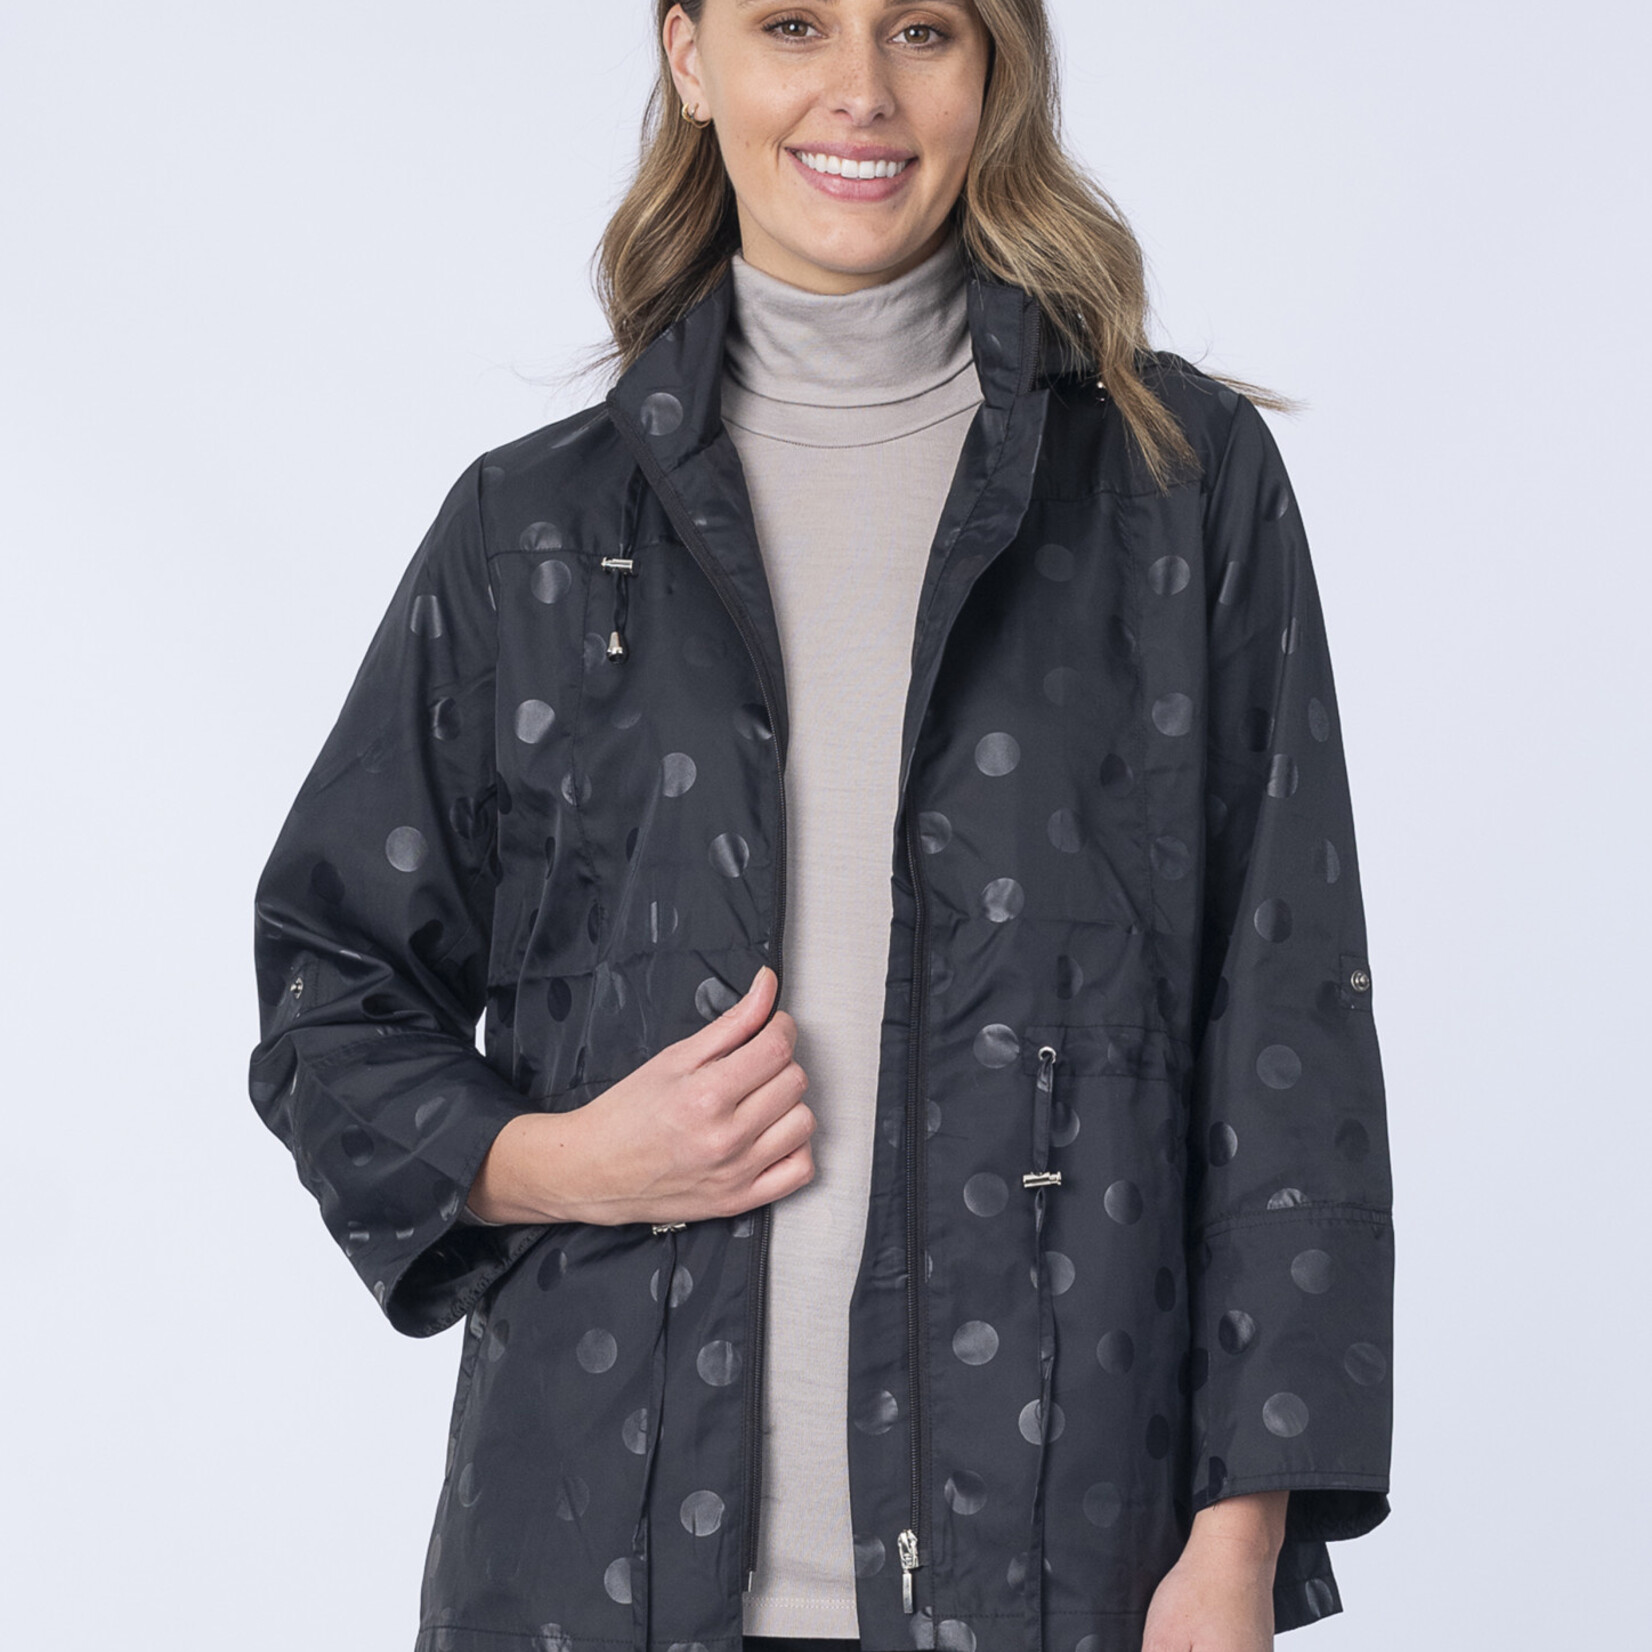 Renoma Black Shower Proof Lightweight Zip Up Jacket/Coat